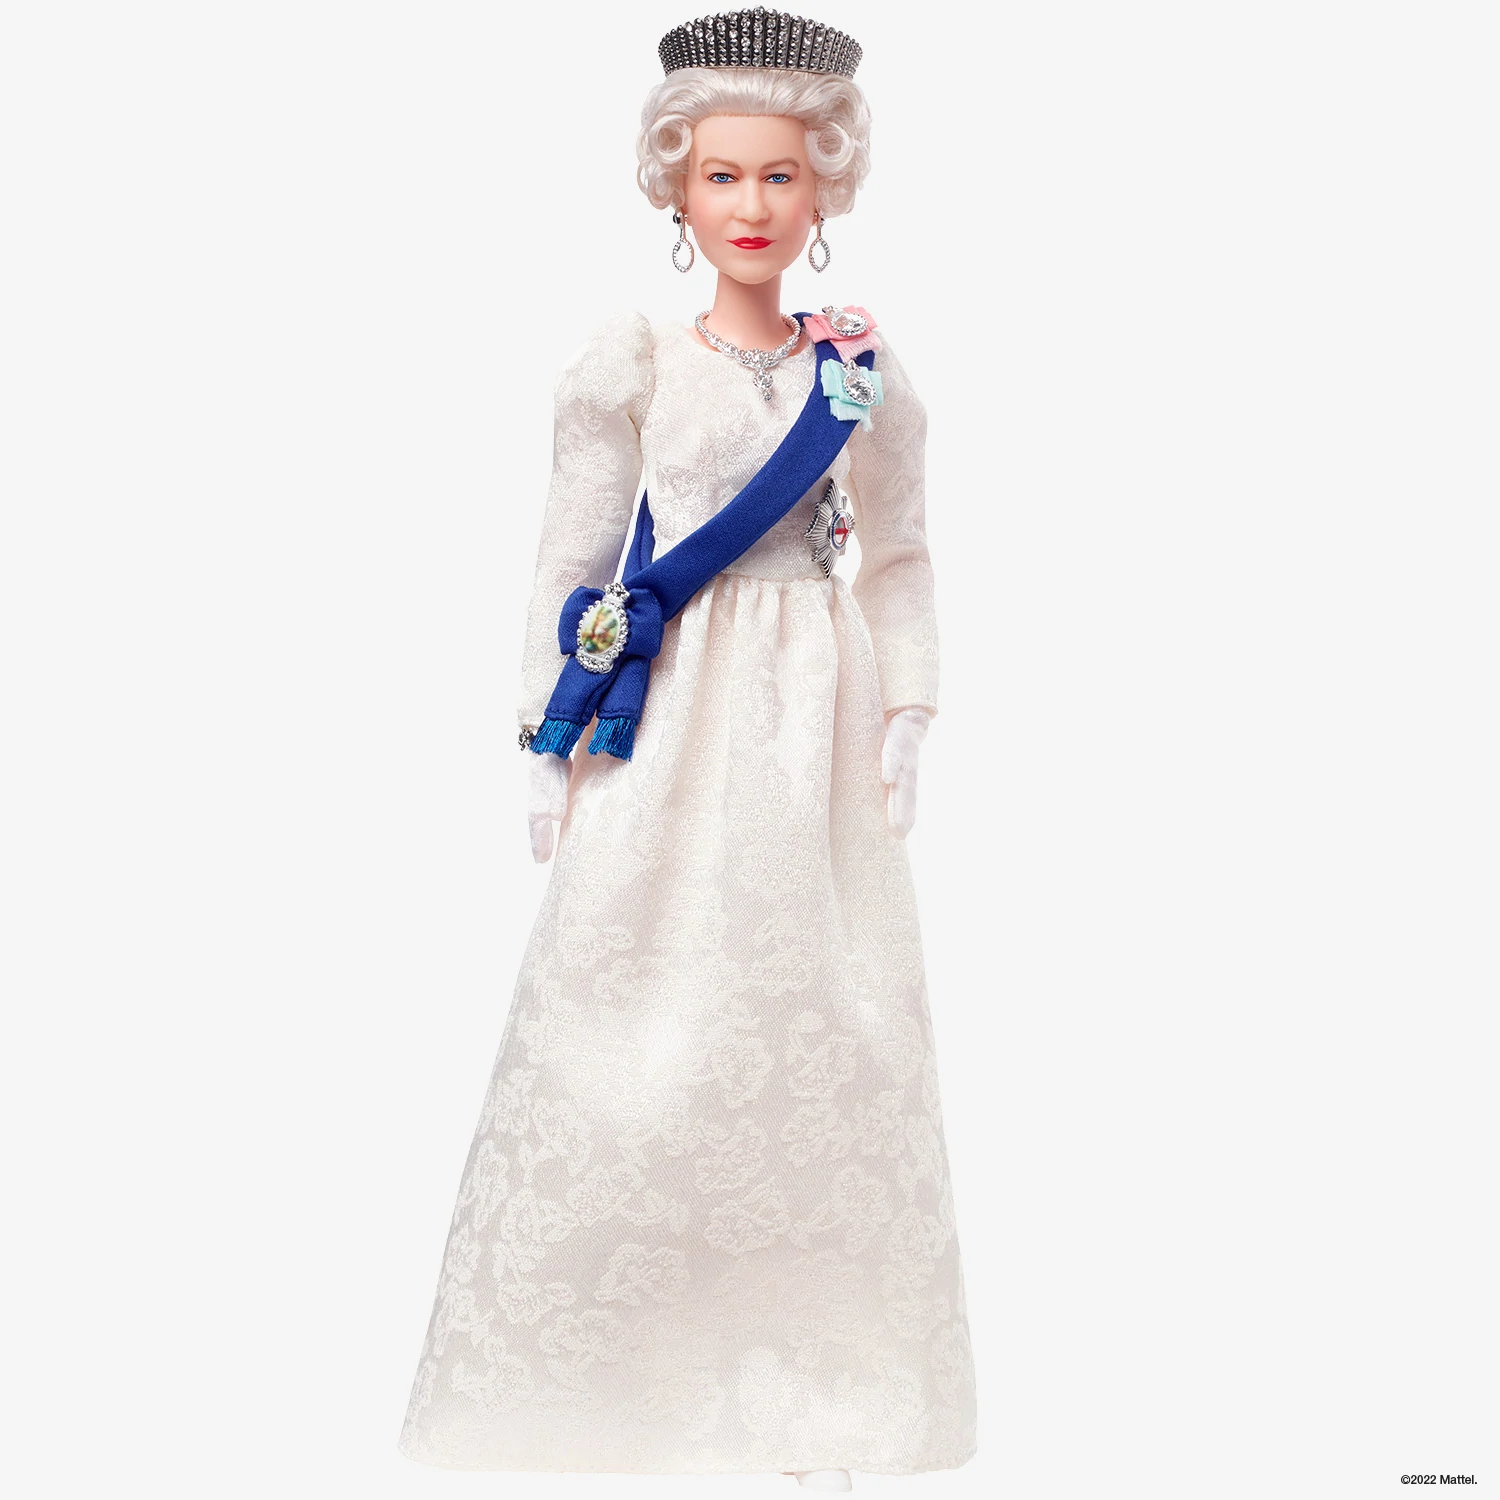 Rainha Elizabeth II vira boneca Barbie em celebração de 70 anos do reinado